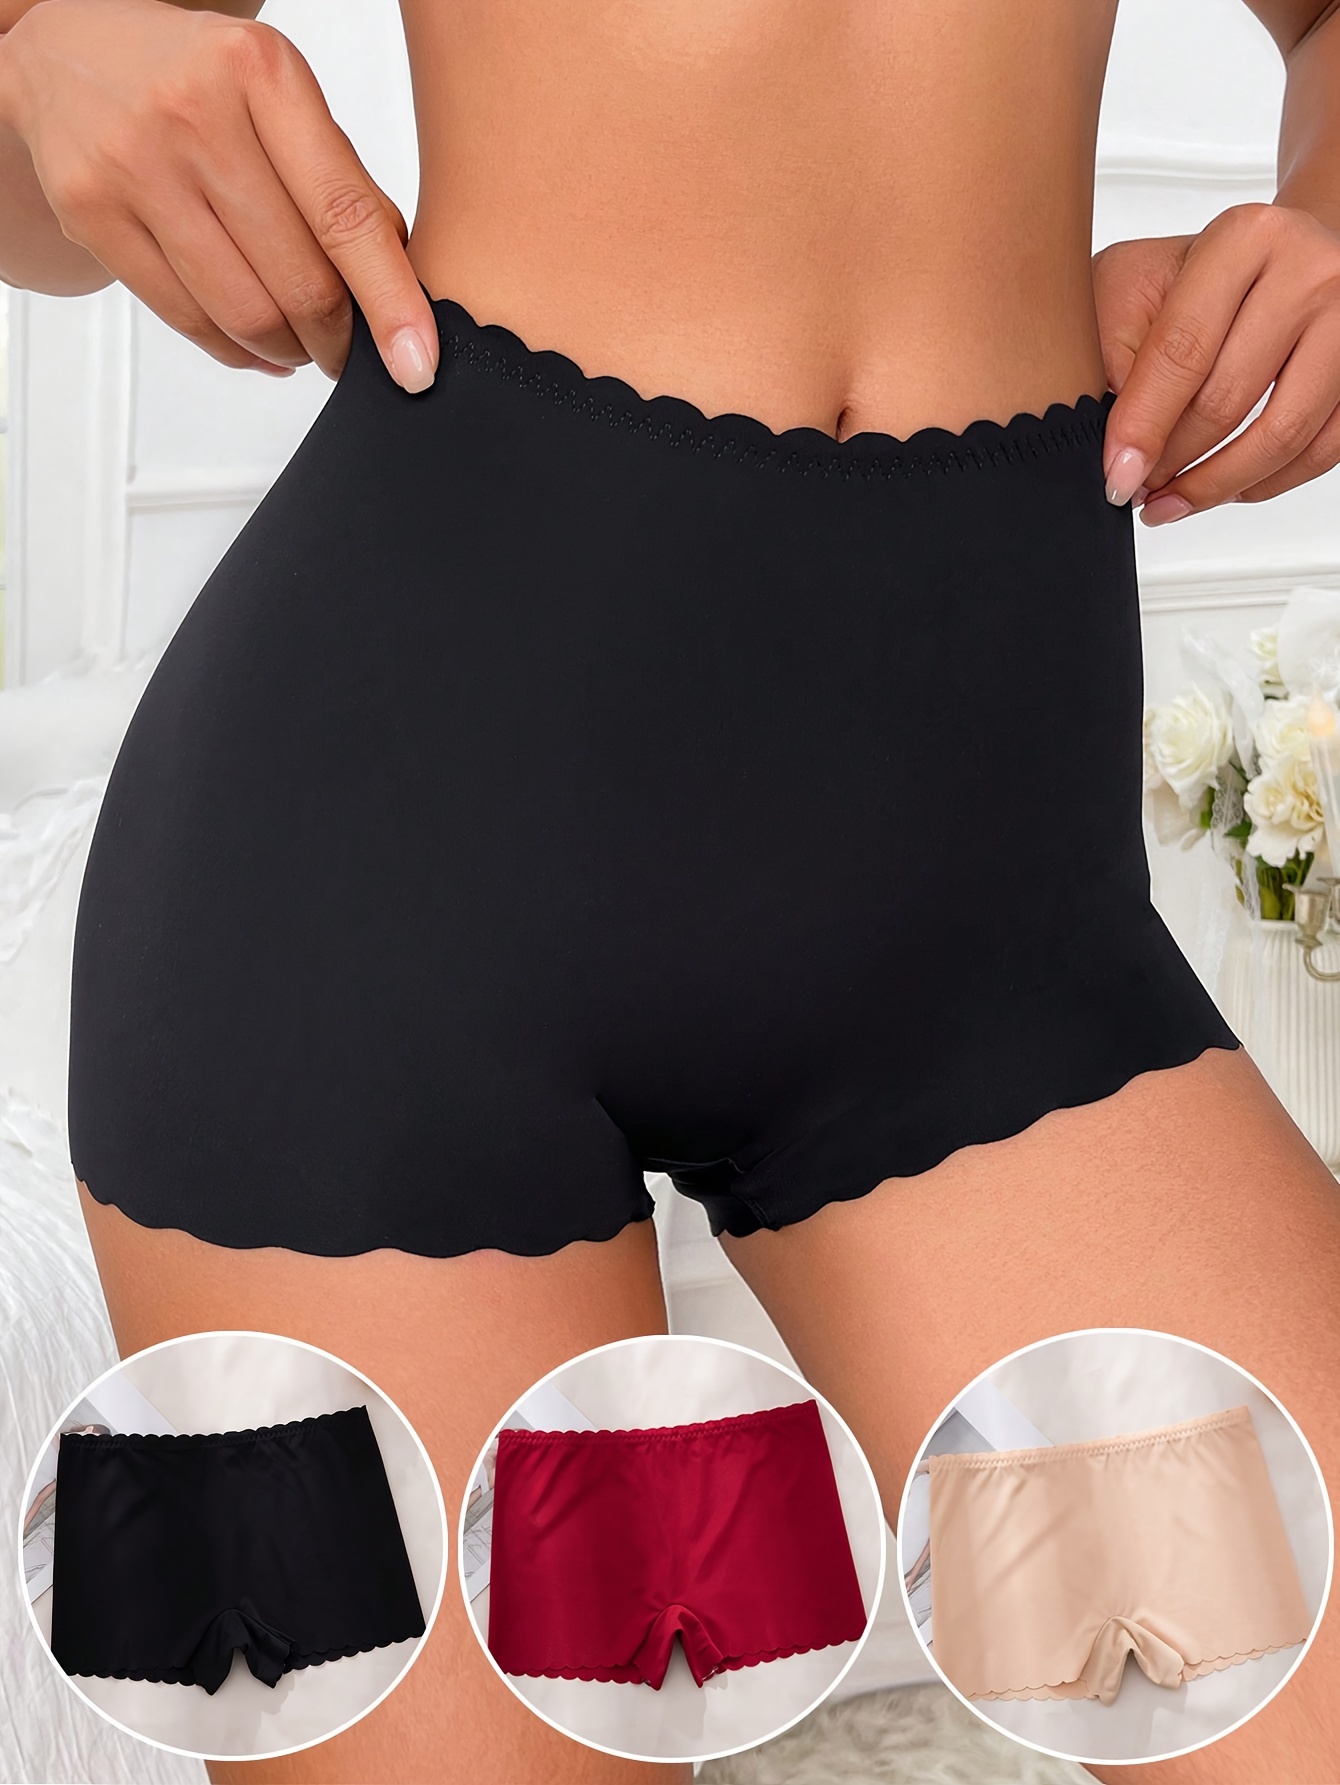 Lace Boyshorts Panties Seductive Semi sheer Low Waist - Temu Canada